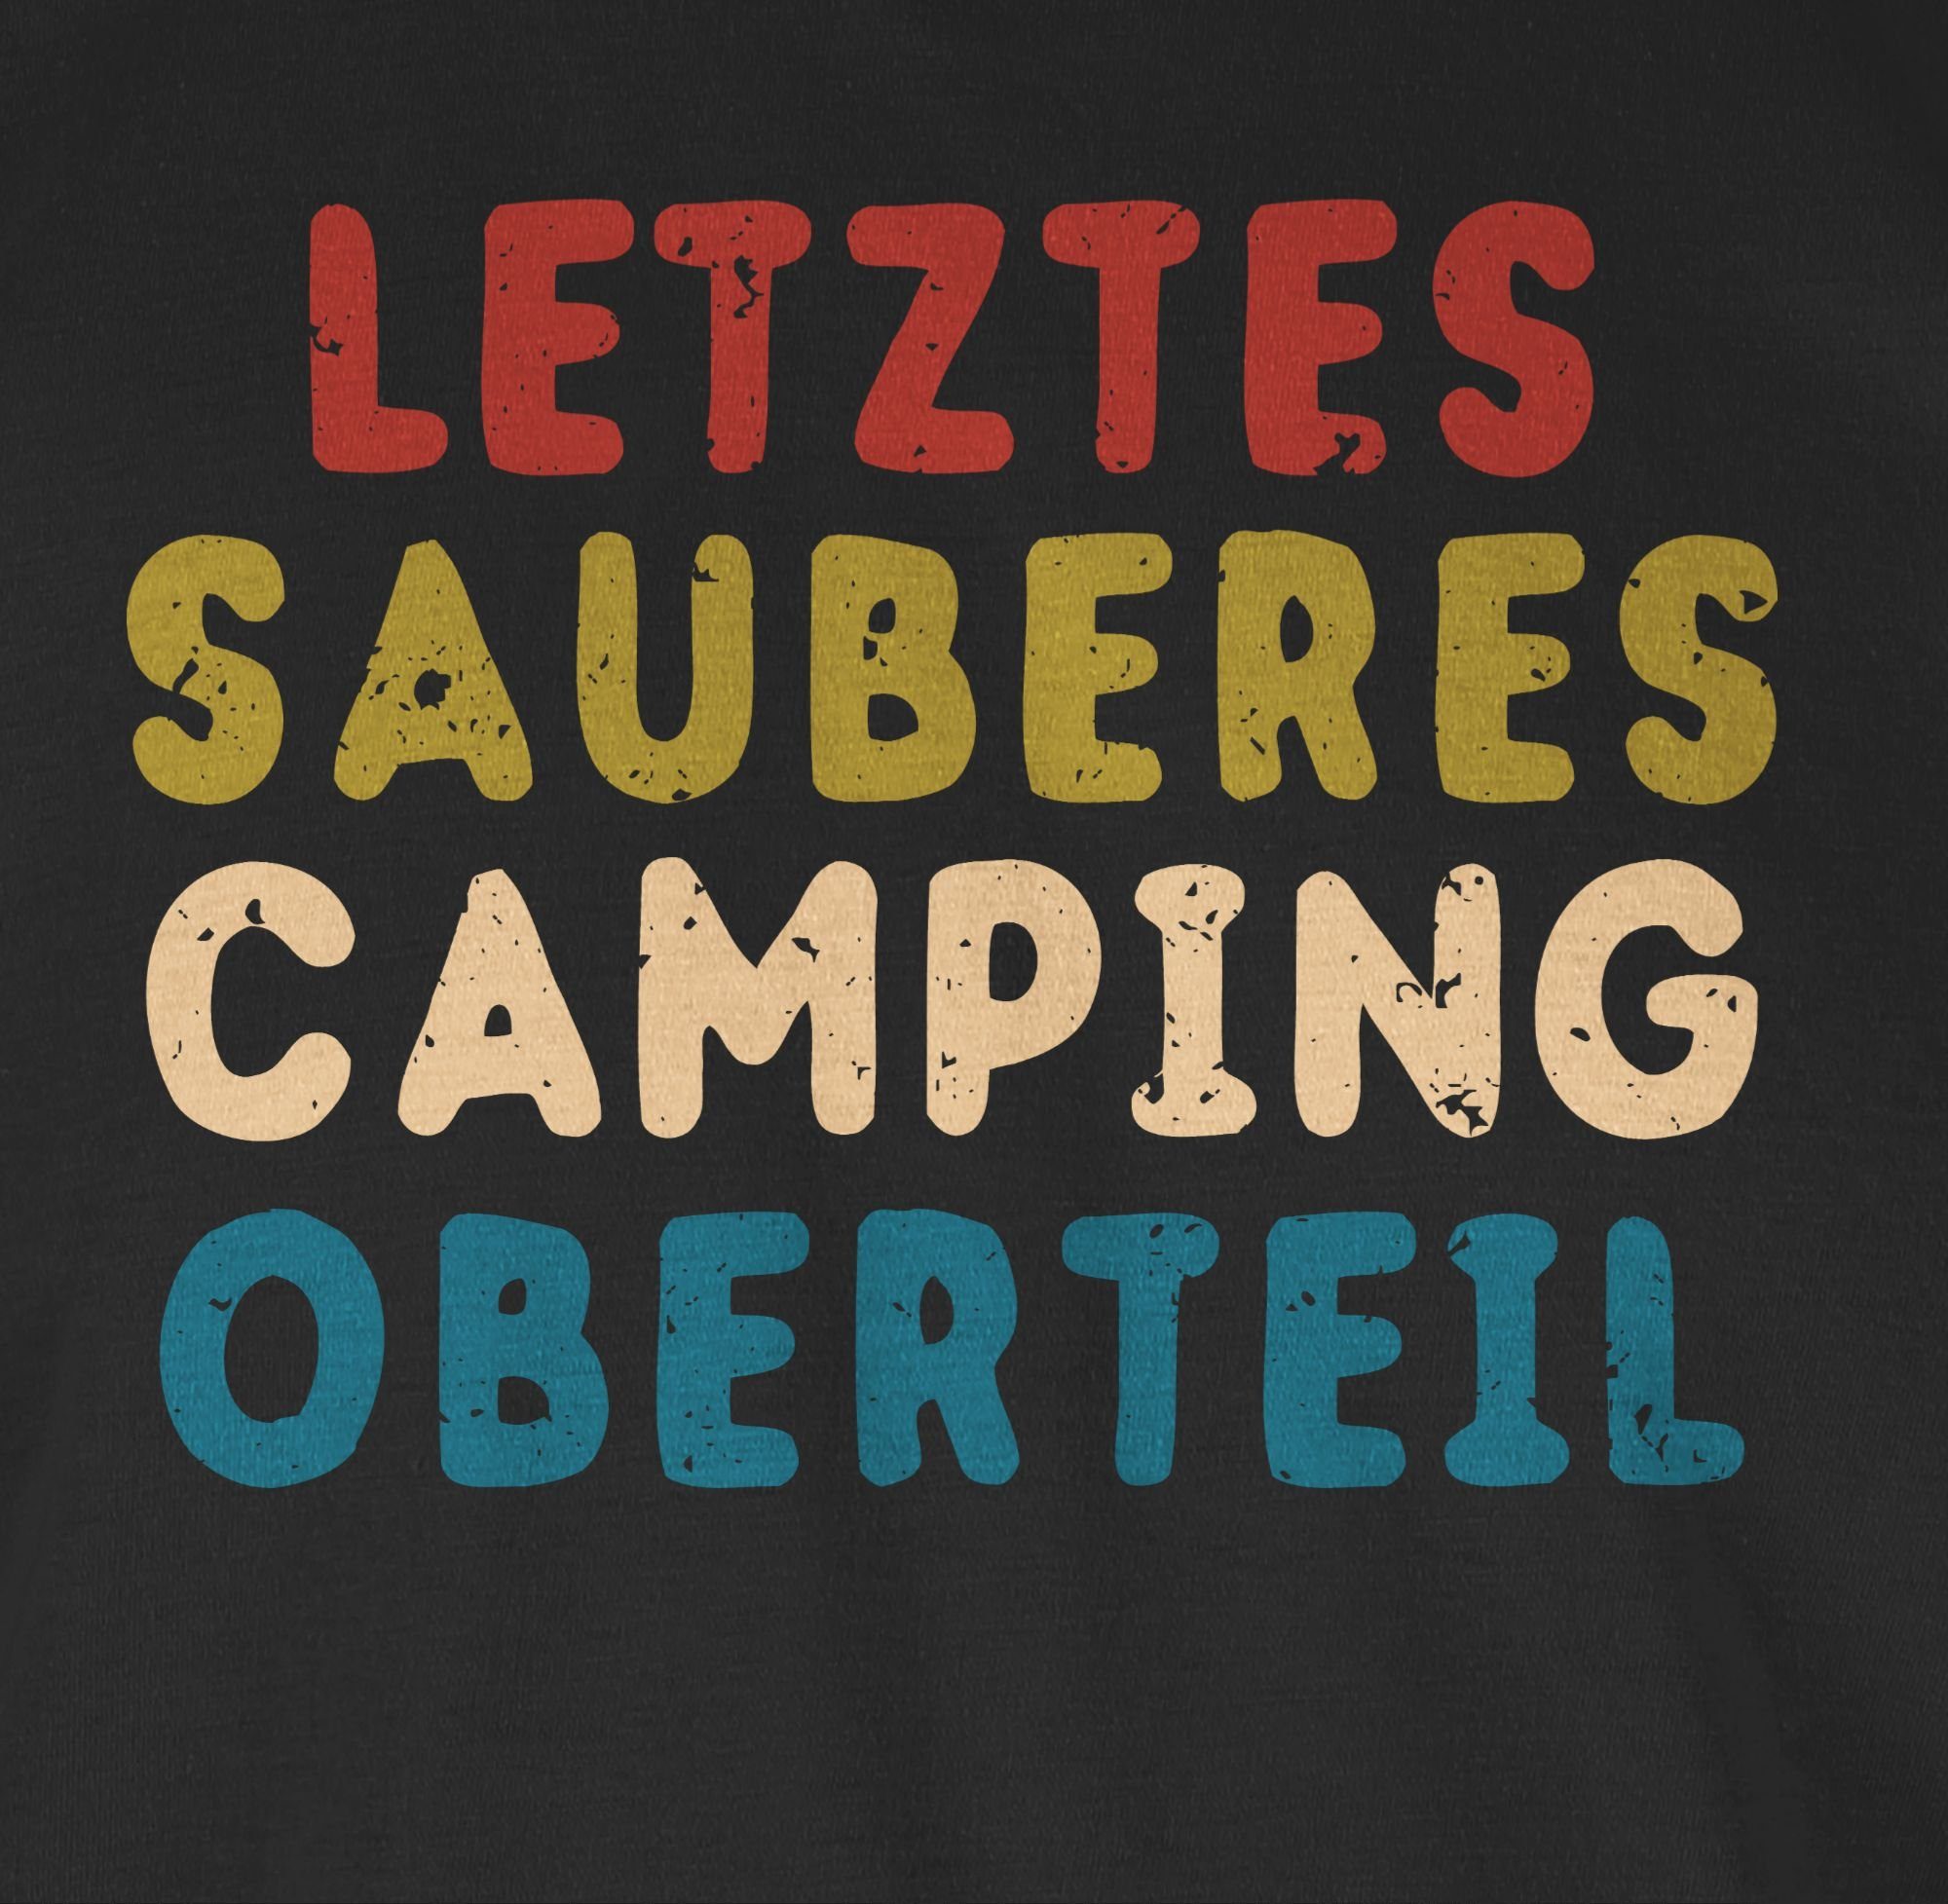 Shirtracer Letztes sauberes T-Shirt 01 Oberteil Camping Sprüche Statement Schwarz